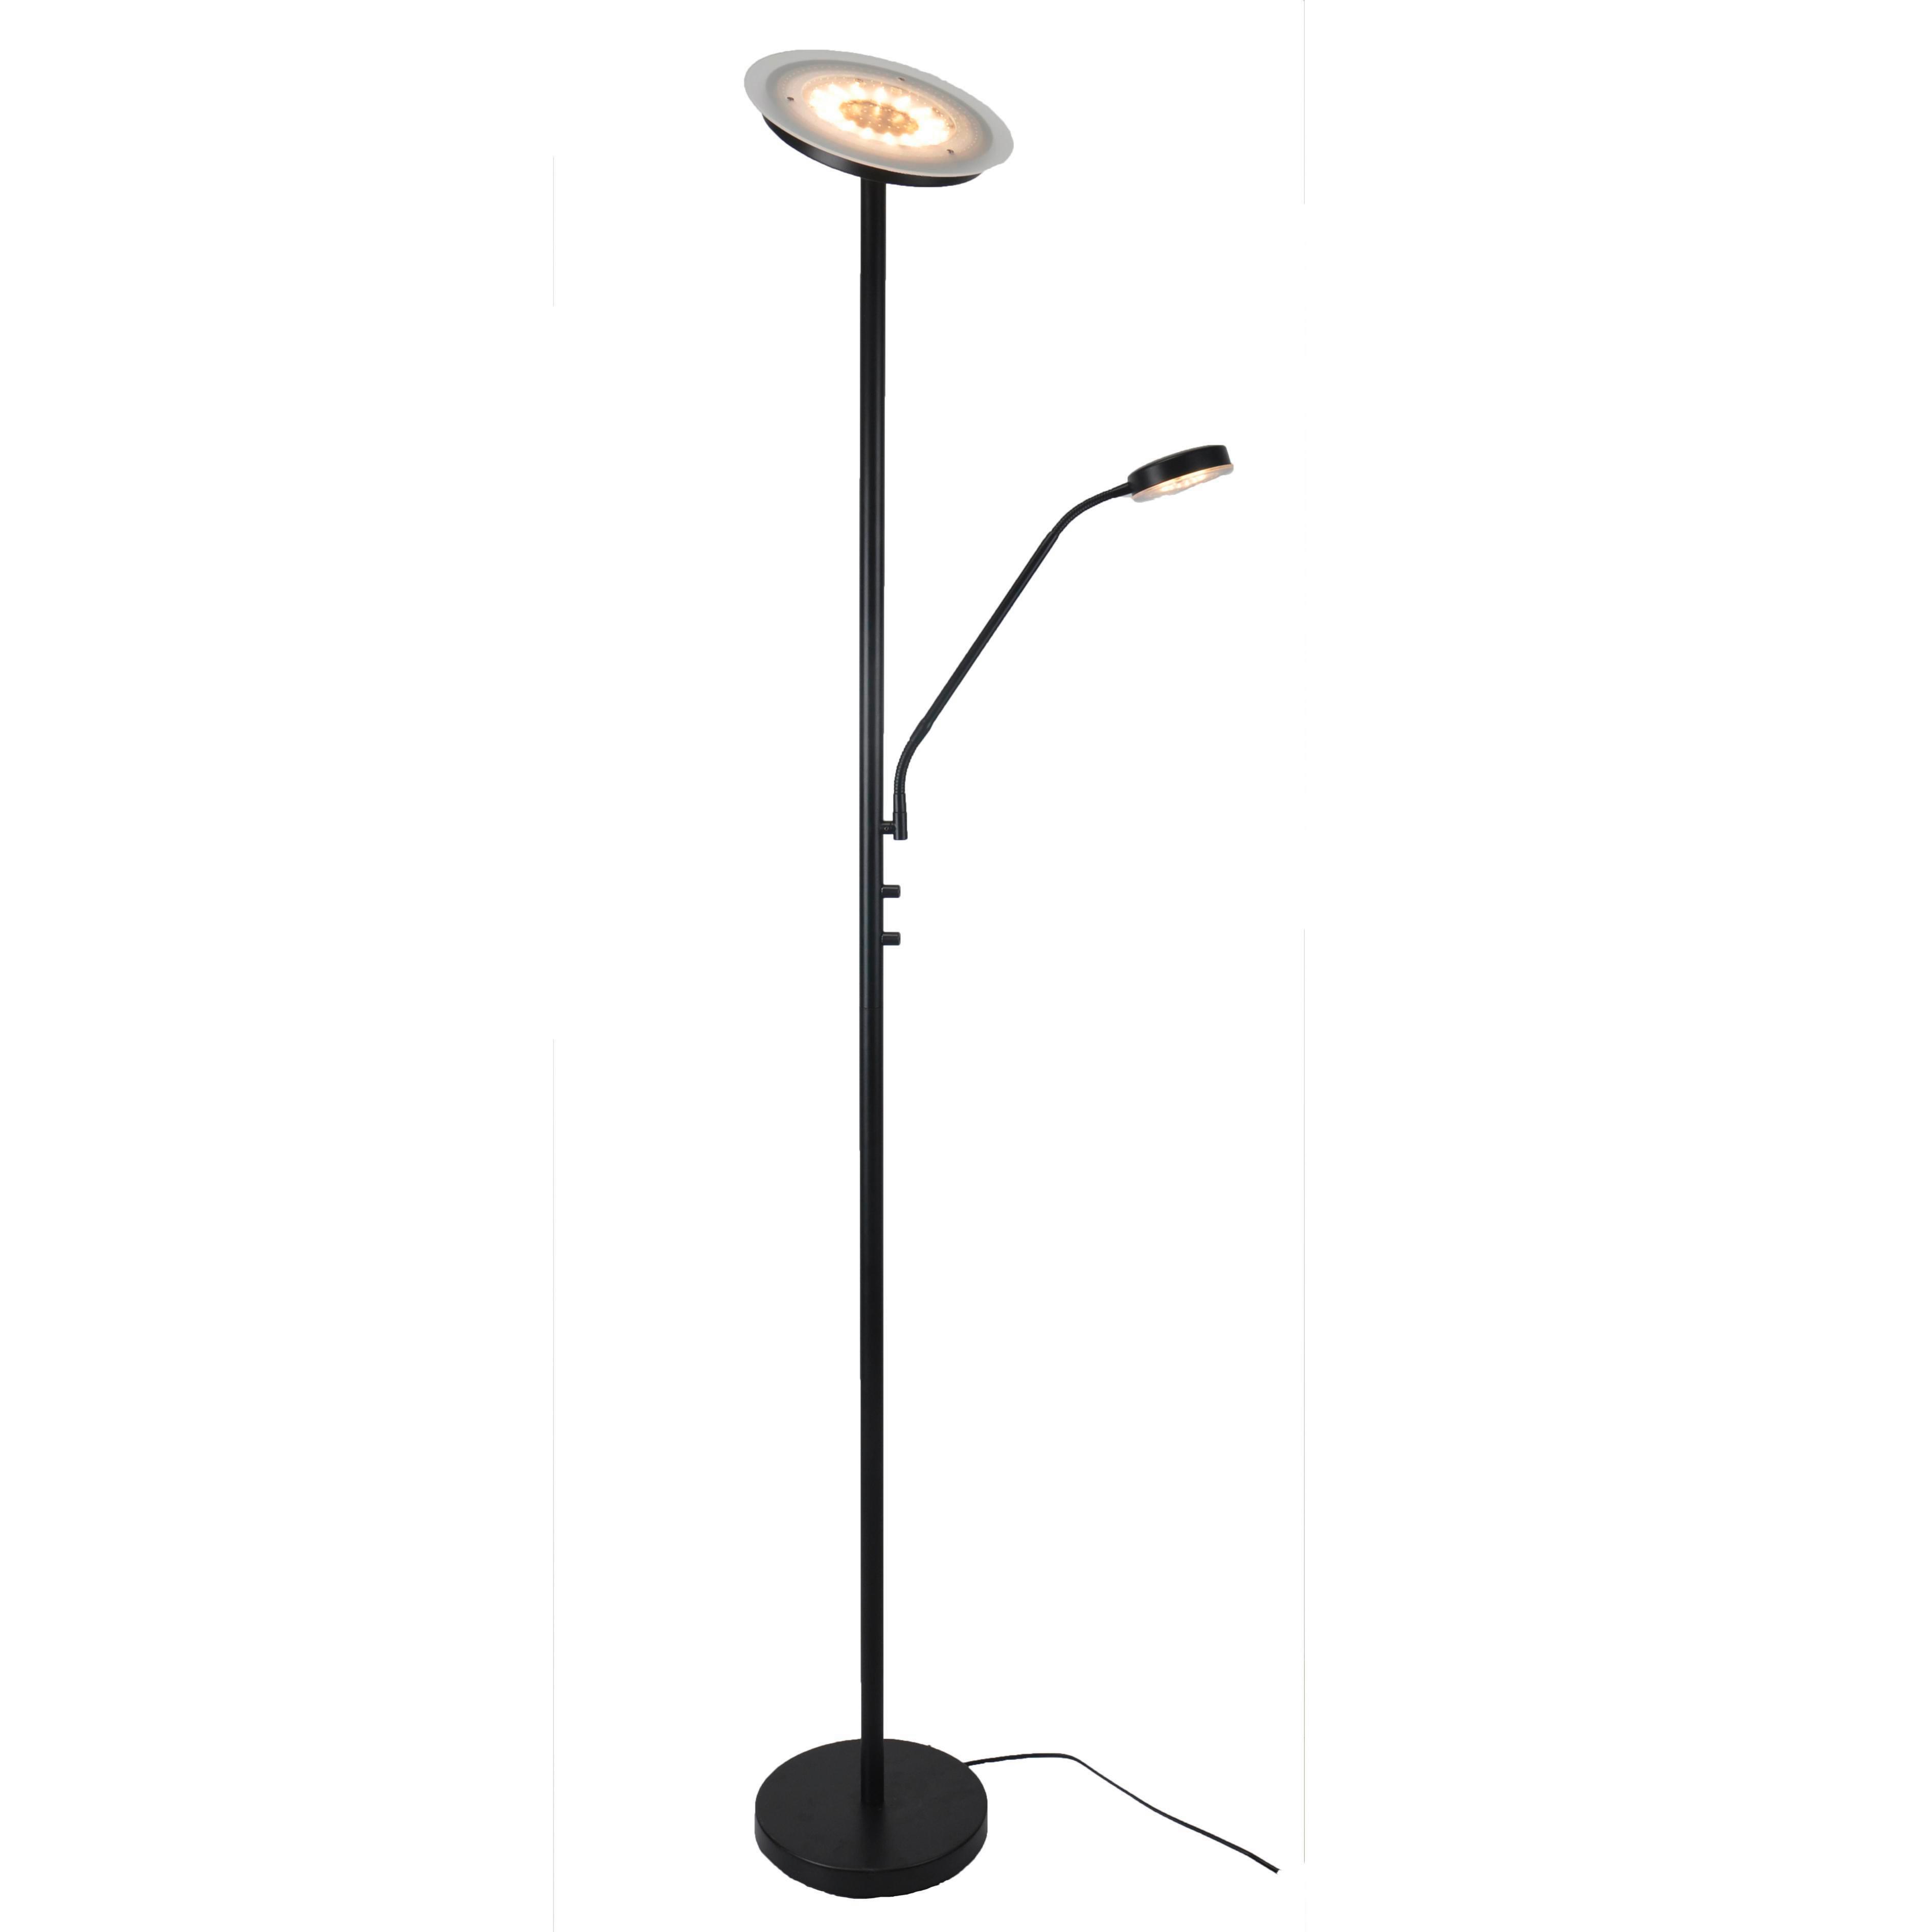 Stojacia Led Lampa Minn, 26/180cm - čierna/biela, Moderný, kov/plast (26/180cm) - Modern Living